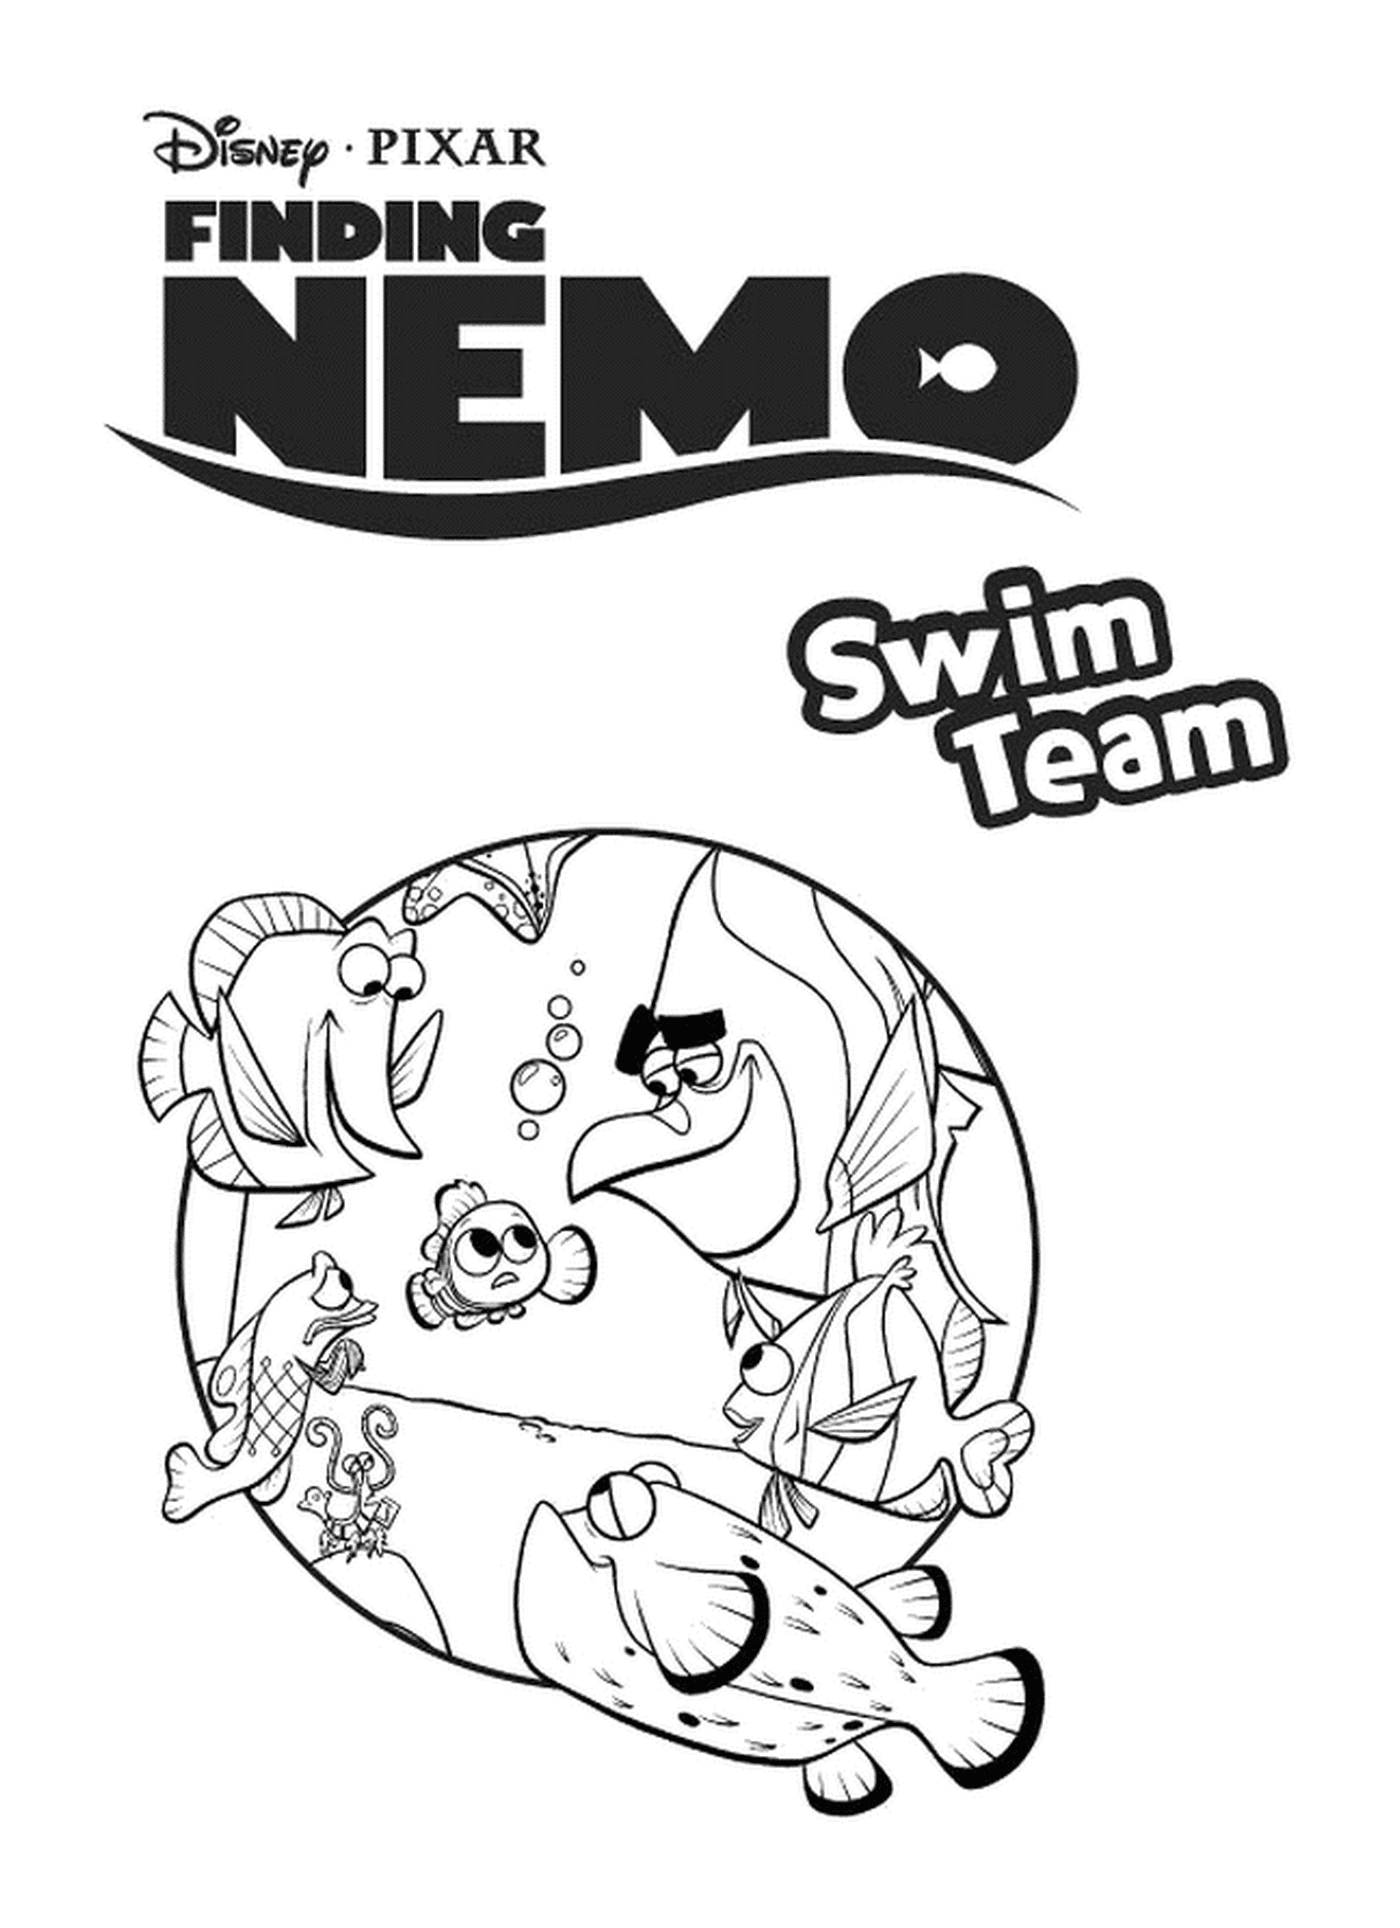  Плавательная команда Найди Немо 